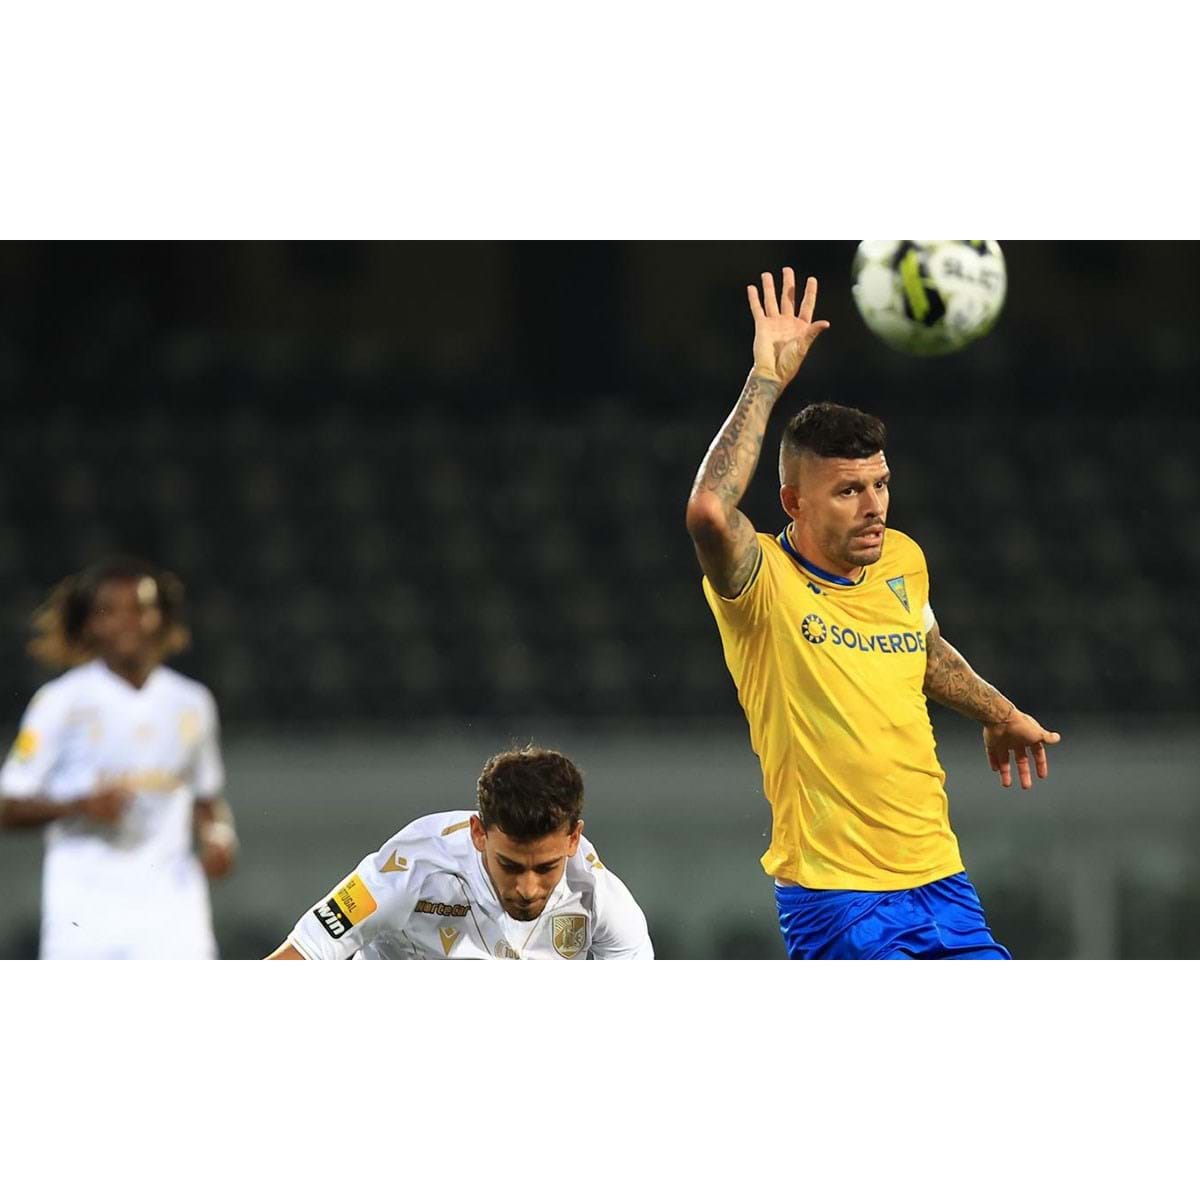 Joãozinho Arrasando no Futebol! ⚽